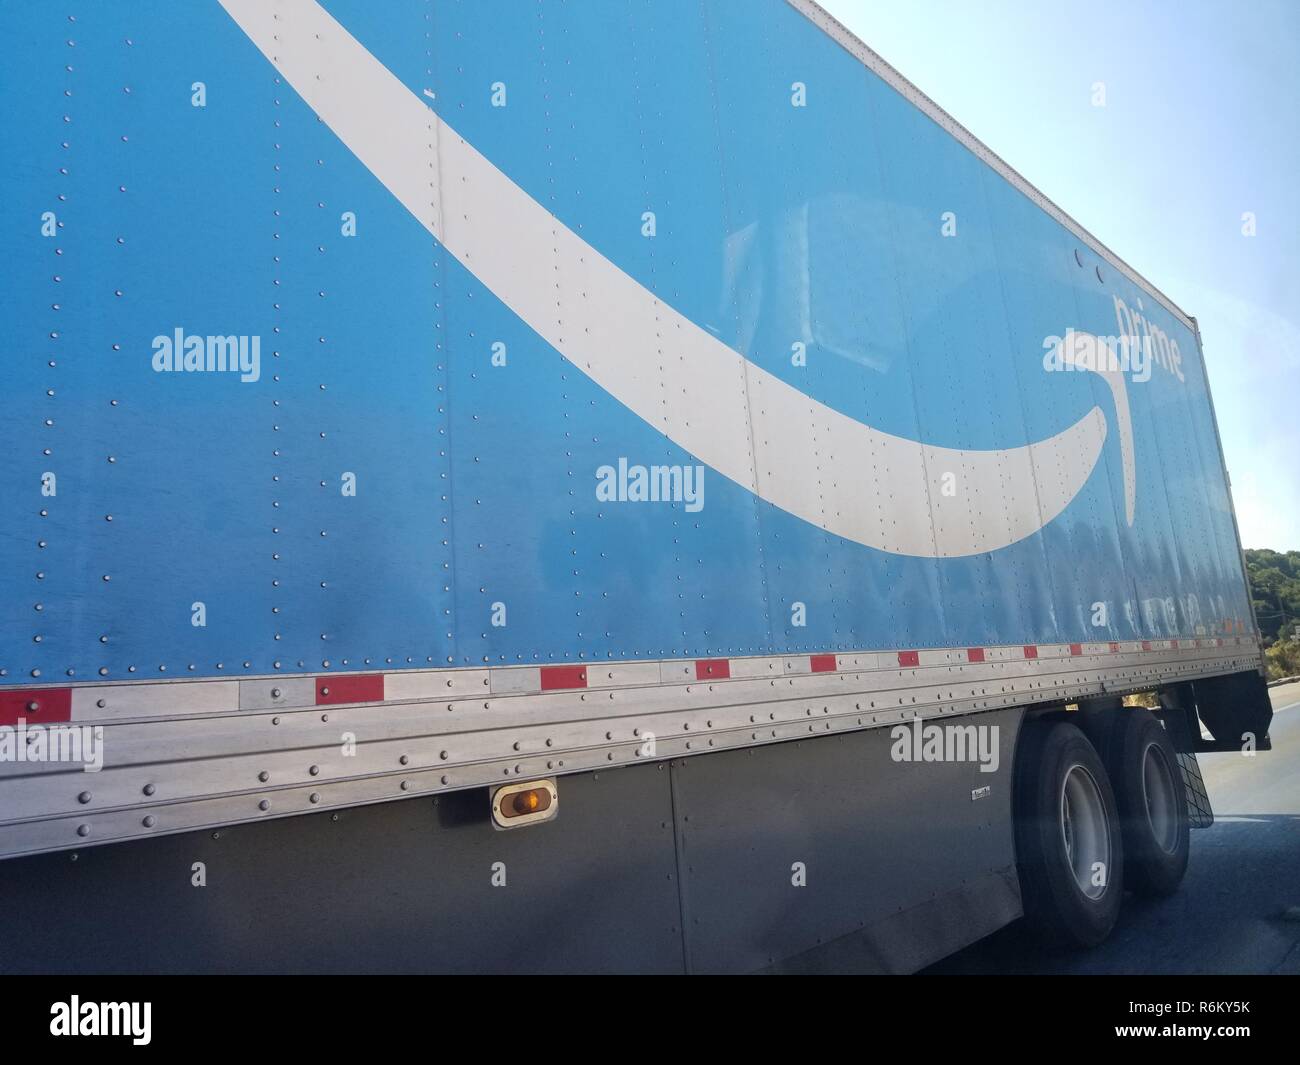 Seitenansicht Traktor Anhänger Semi Truck mit Logo für Amazon Prime  Lieferservice in San Ramon, Kalifornien, 8. Oktober 2018 Stockfotografie -  Alamy